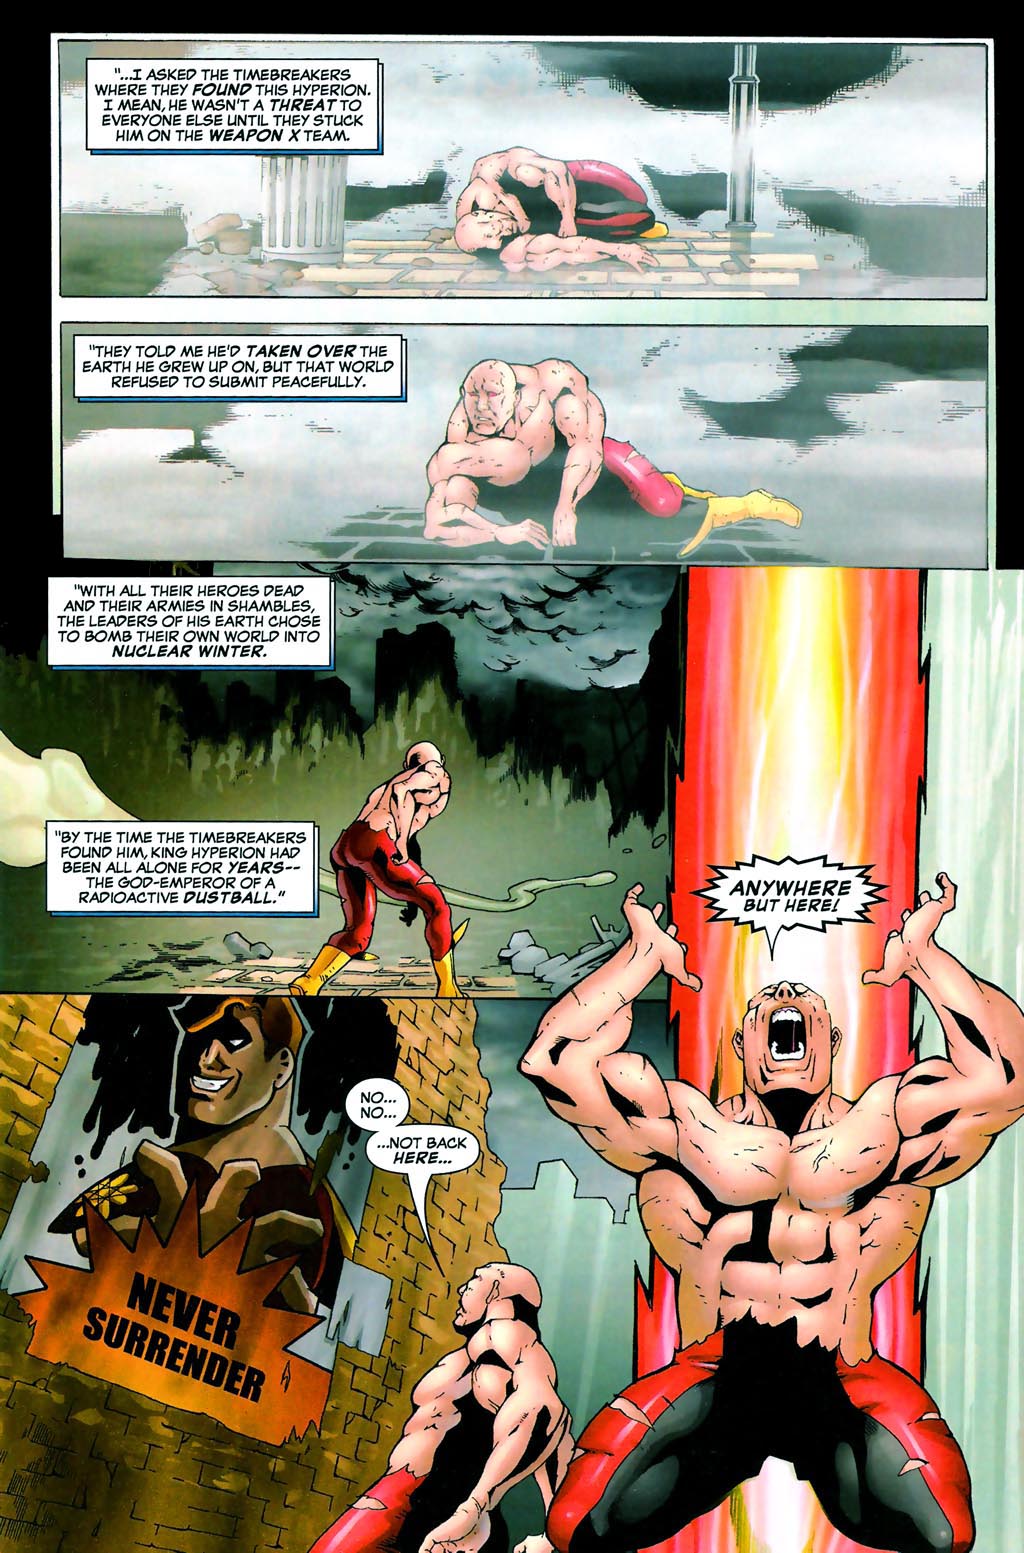 Exiles (Marvel) #39 VF/NM ; Marvel, King Hyperion 2